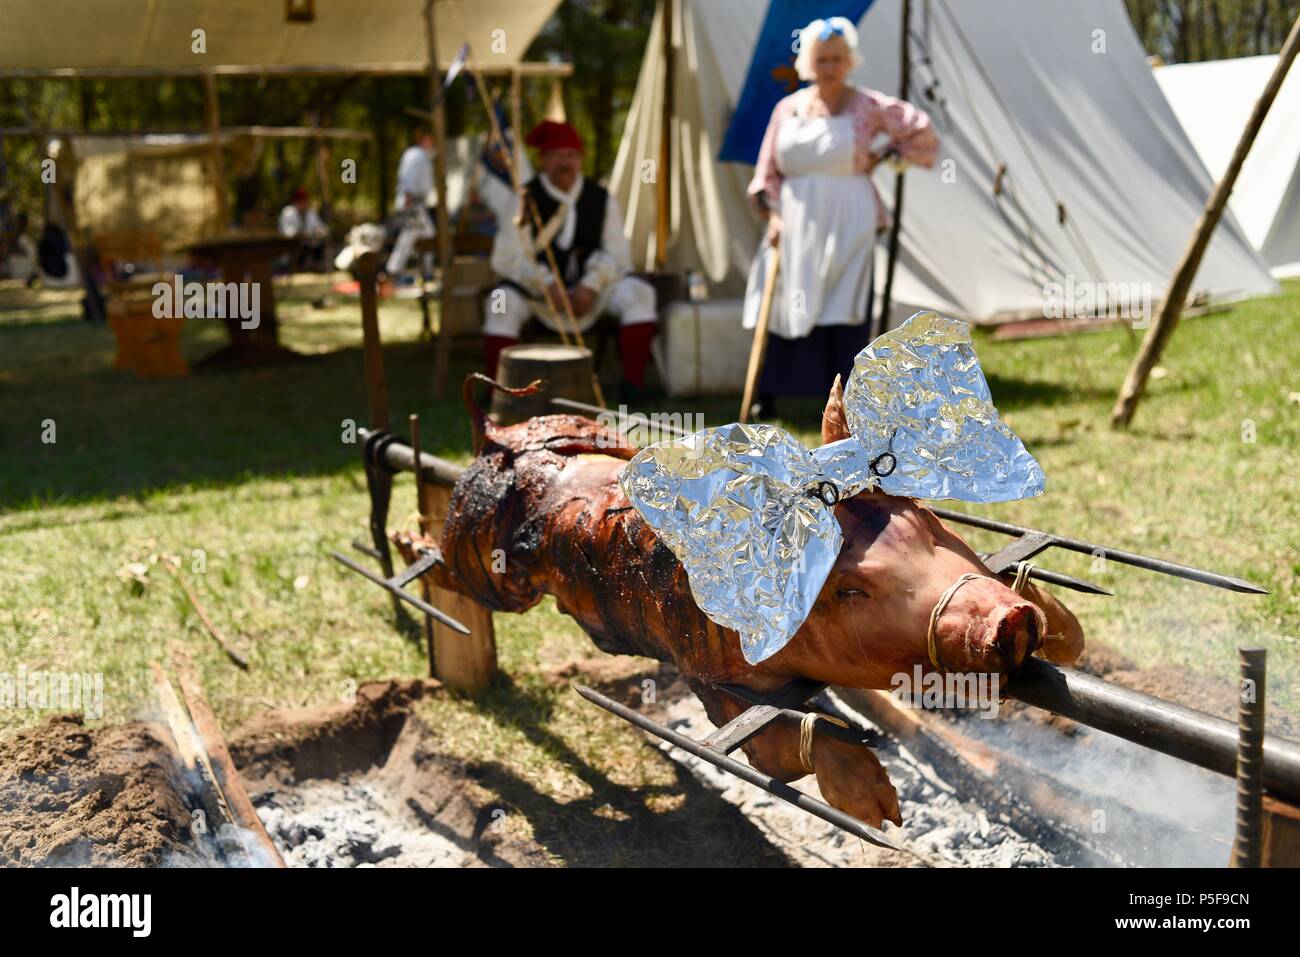 Costume di re-enactors al di fuori della tenda, lento un arrosto di maiale interi all'aperto oltre a un falò presso il lago di sanguinose Rendezvous, Woodford, WI, Stati Uniti d'America Foto Stock